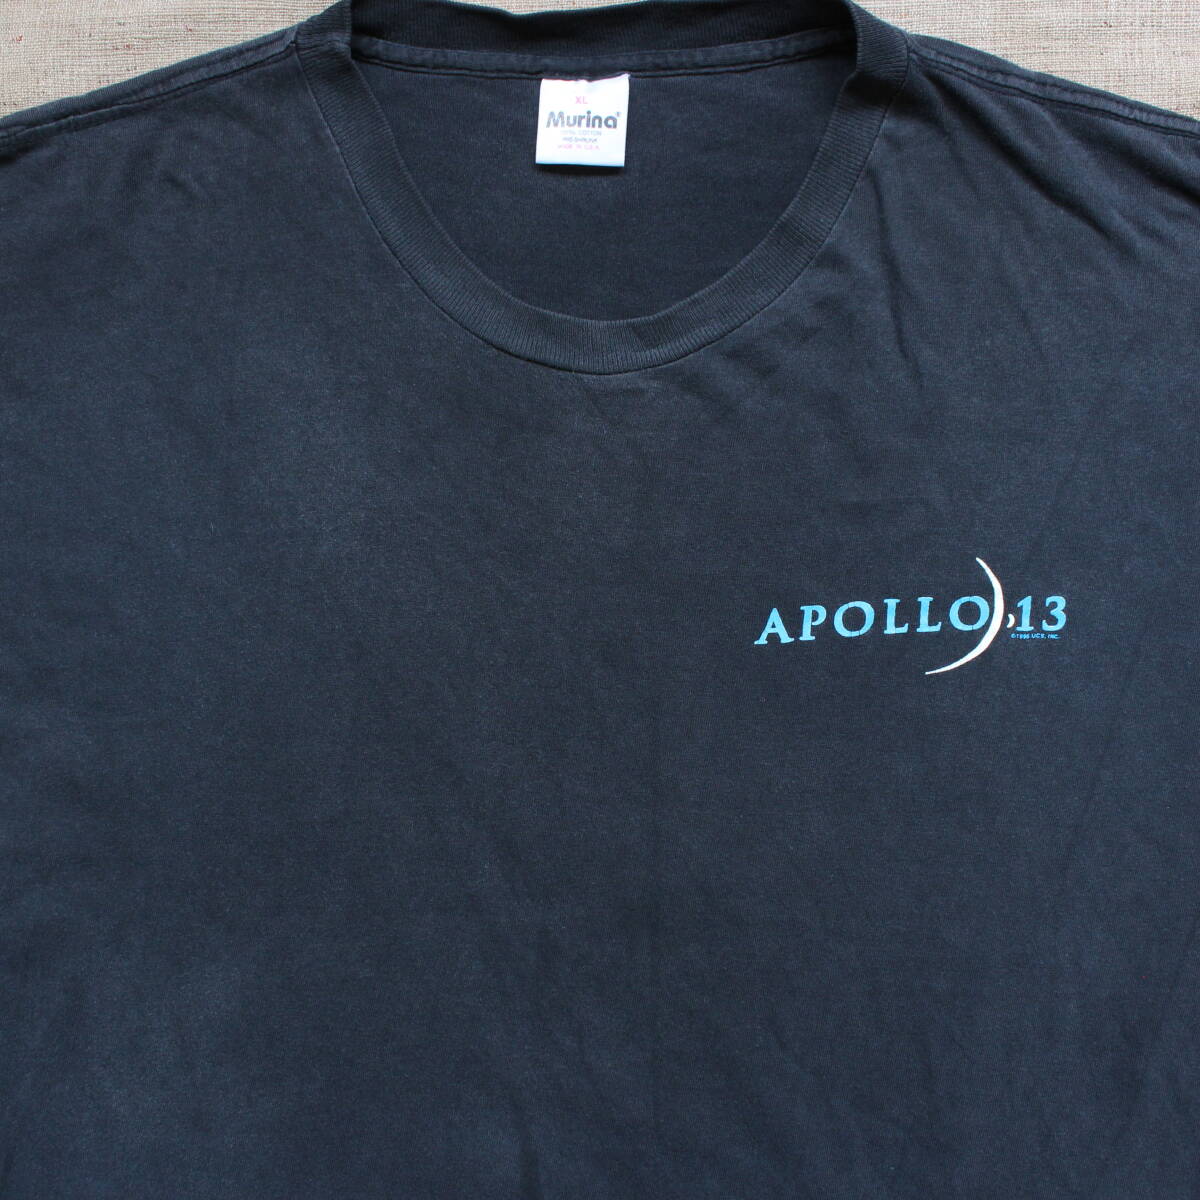 1990s アポロ13 APOLLOヴィンテージTシャツ 映画フィルム 宇宙 月面 アートXL古着NASA地球 スペースUSA製フェード 無重力 大気圏エイリアン_画像7